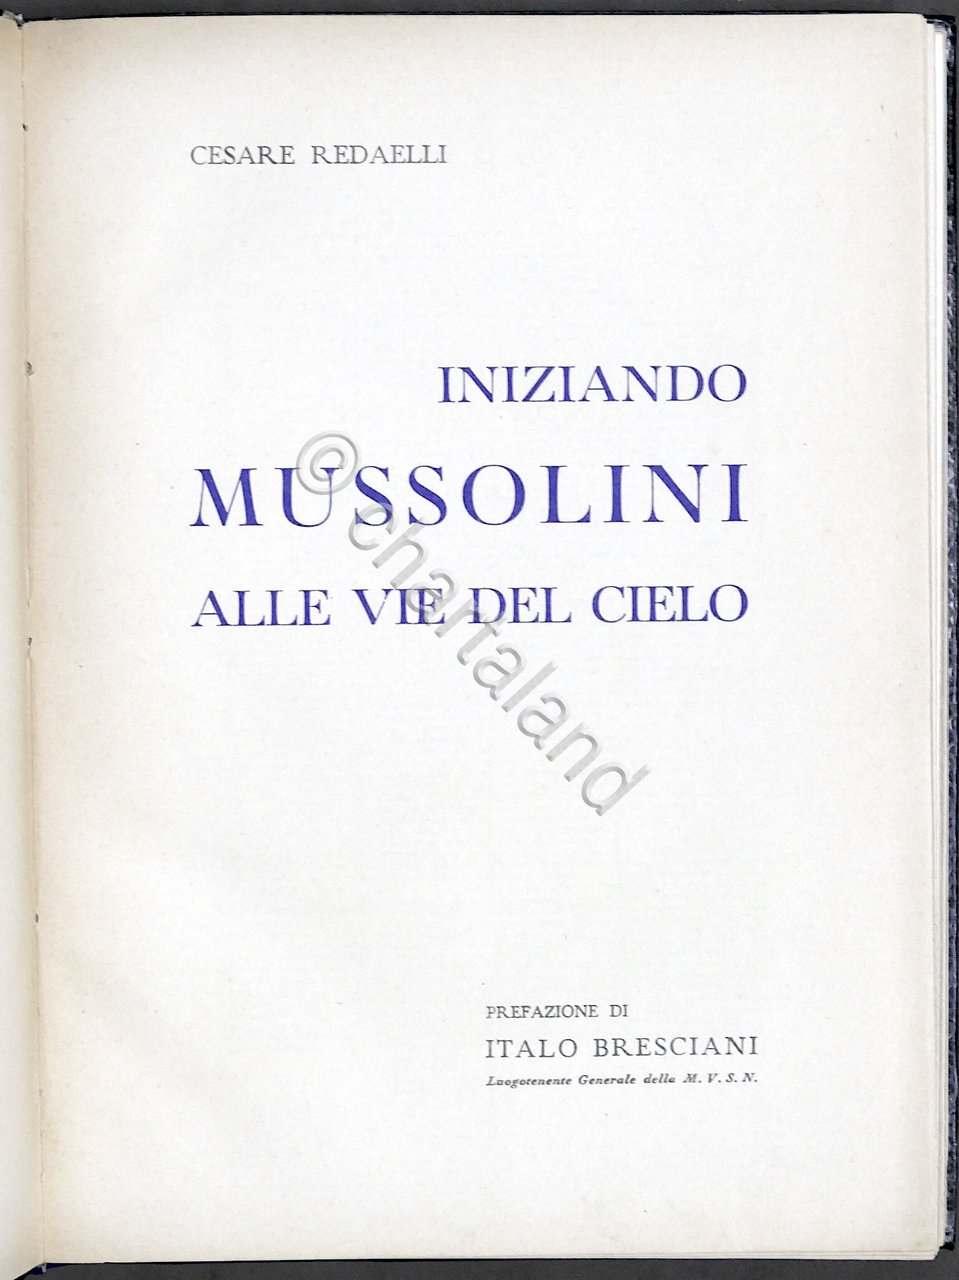 C. Redaelli - Iniziando Mussolini alle vie del cielo - …